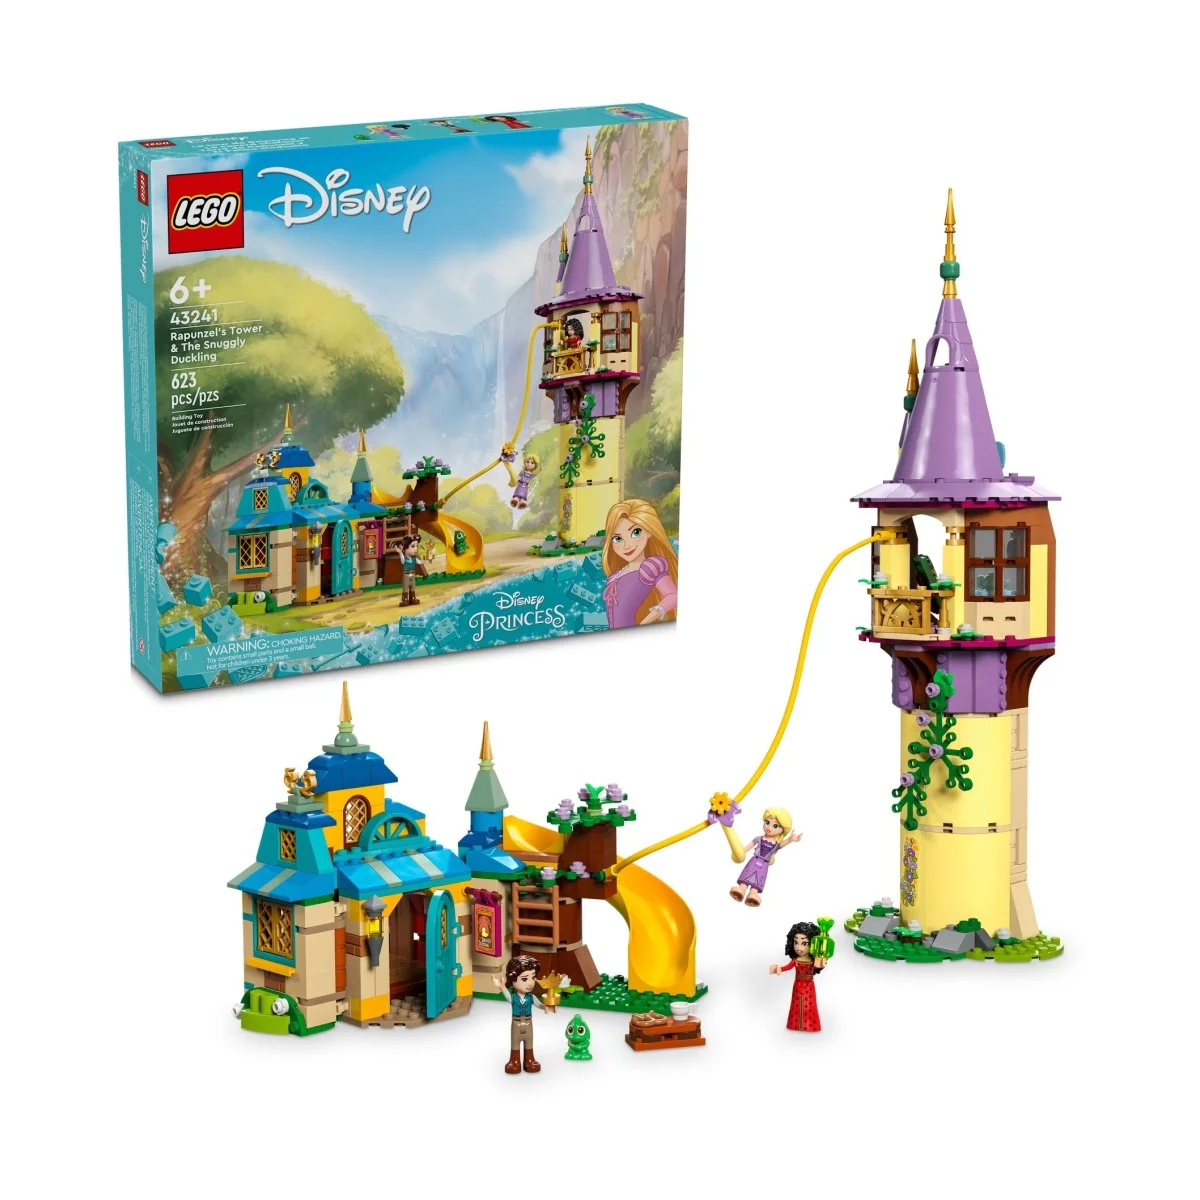 Конструктор Lego Disney Rapunzel's Tower & The Snuggly Duckling 43241, 623 детали рапунцель запутанная история